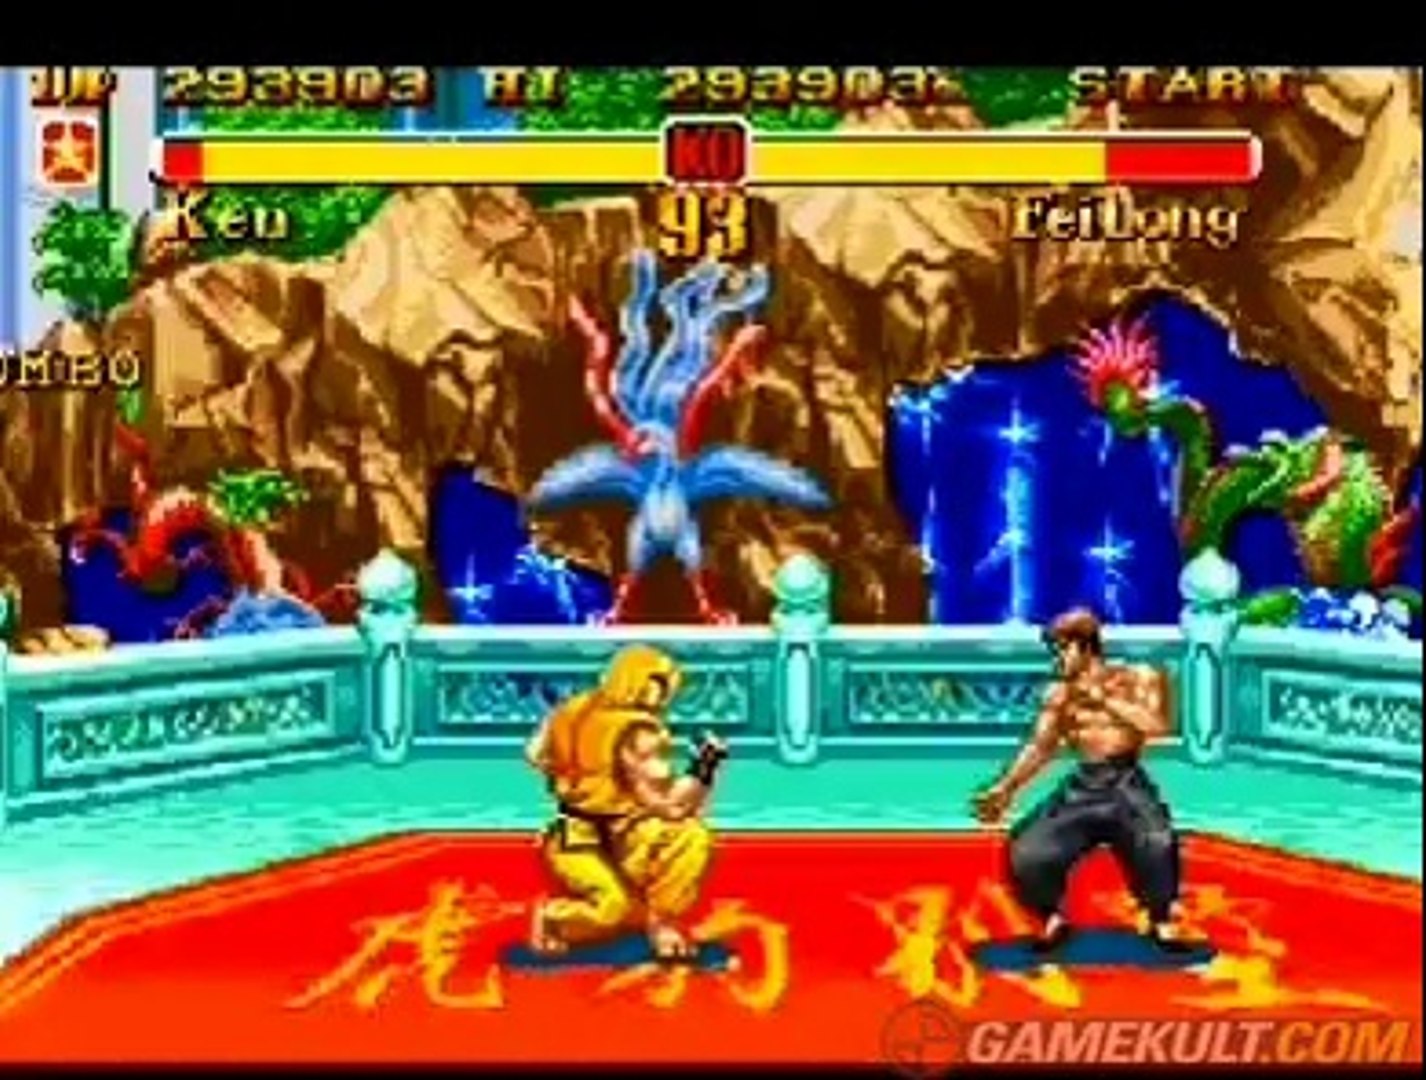 SNES Street Fighter II - Ryu vs Ken 